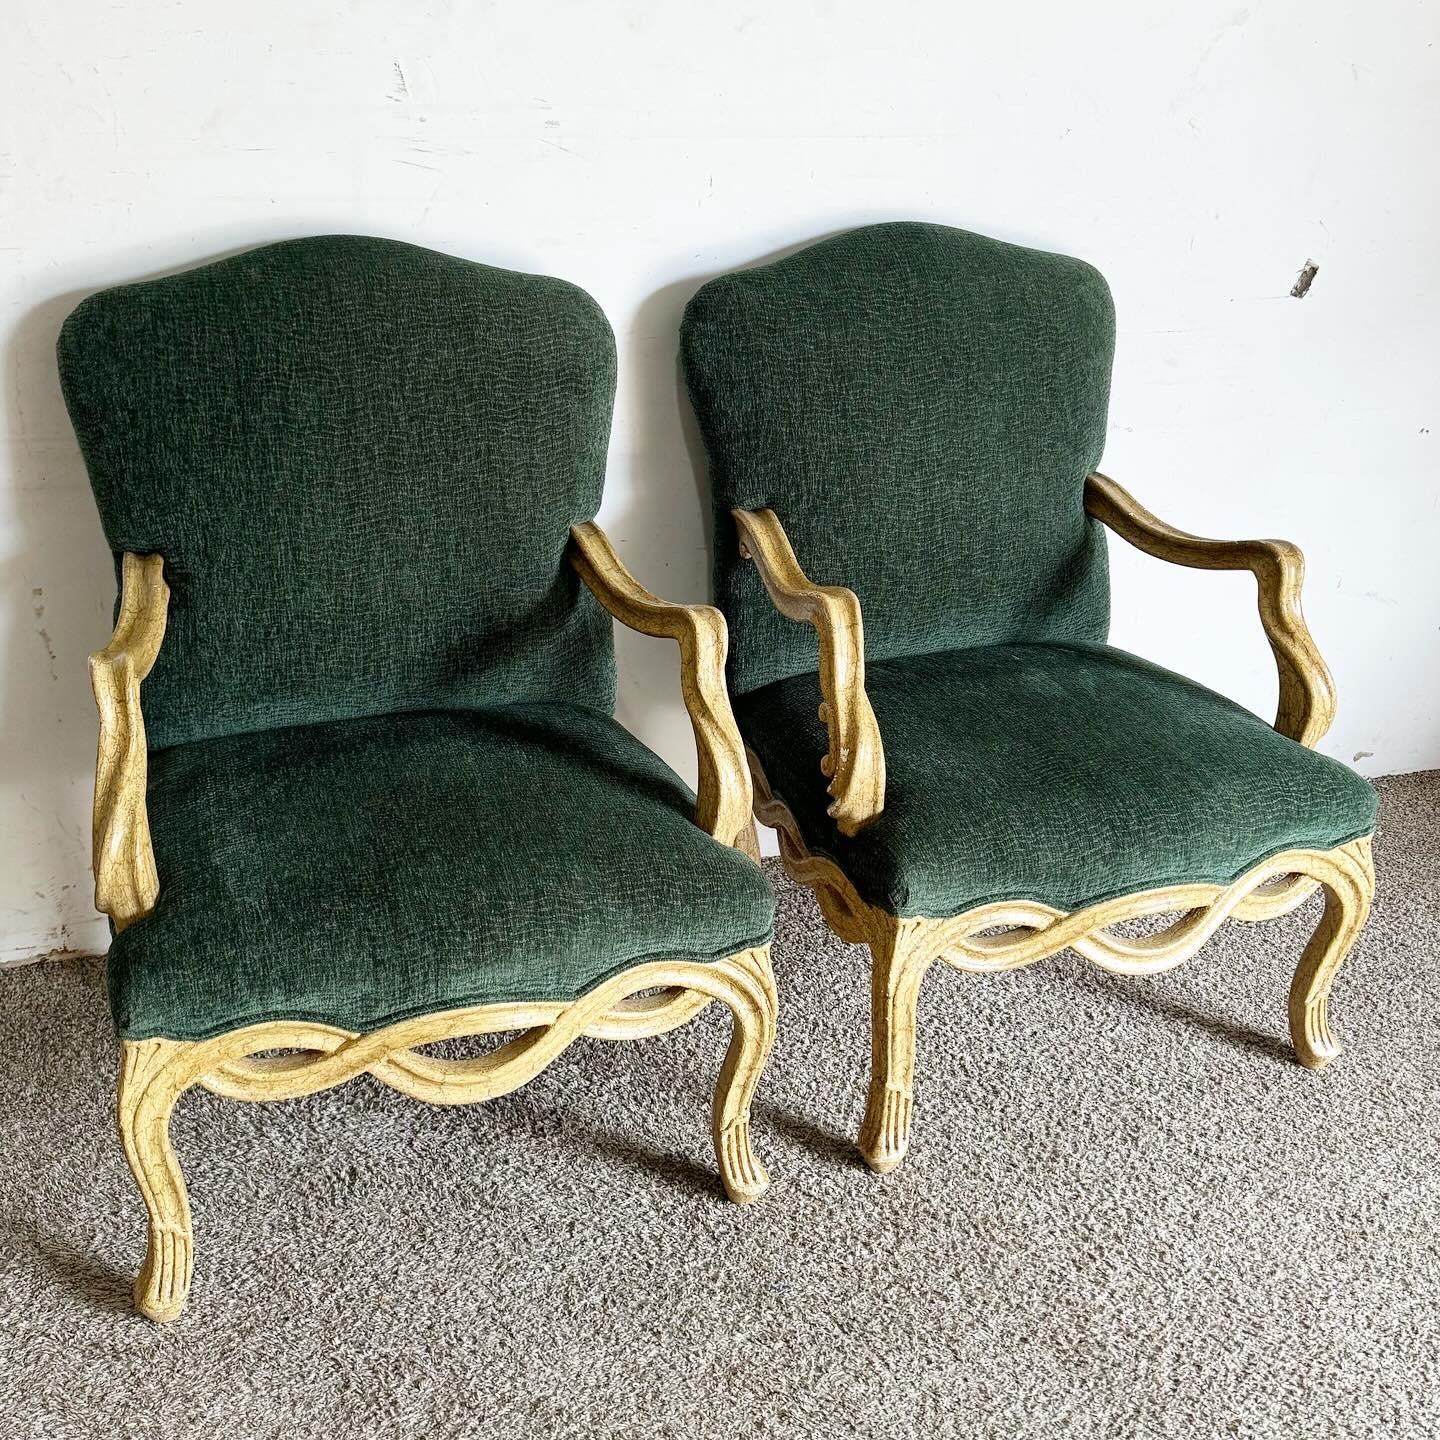 Embrassez l'élégance intemporelle des fauteuils verts de style provincial français, rehaussés par un cadre en bois torsadé unique. Ces fauteuils combinent l'artisanat traditionnel avec une touche de modernité, avec des cadres en bois sculptés de